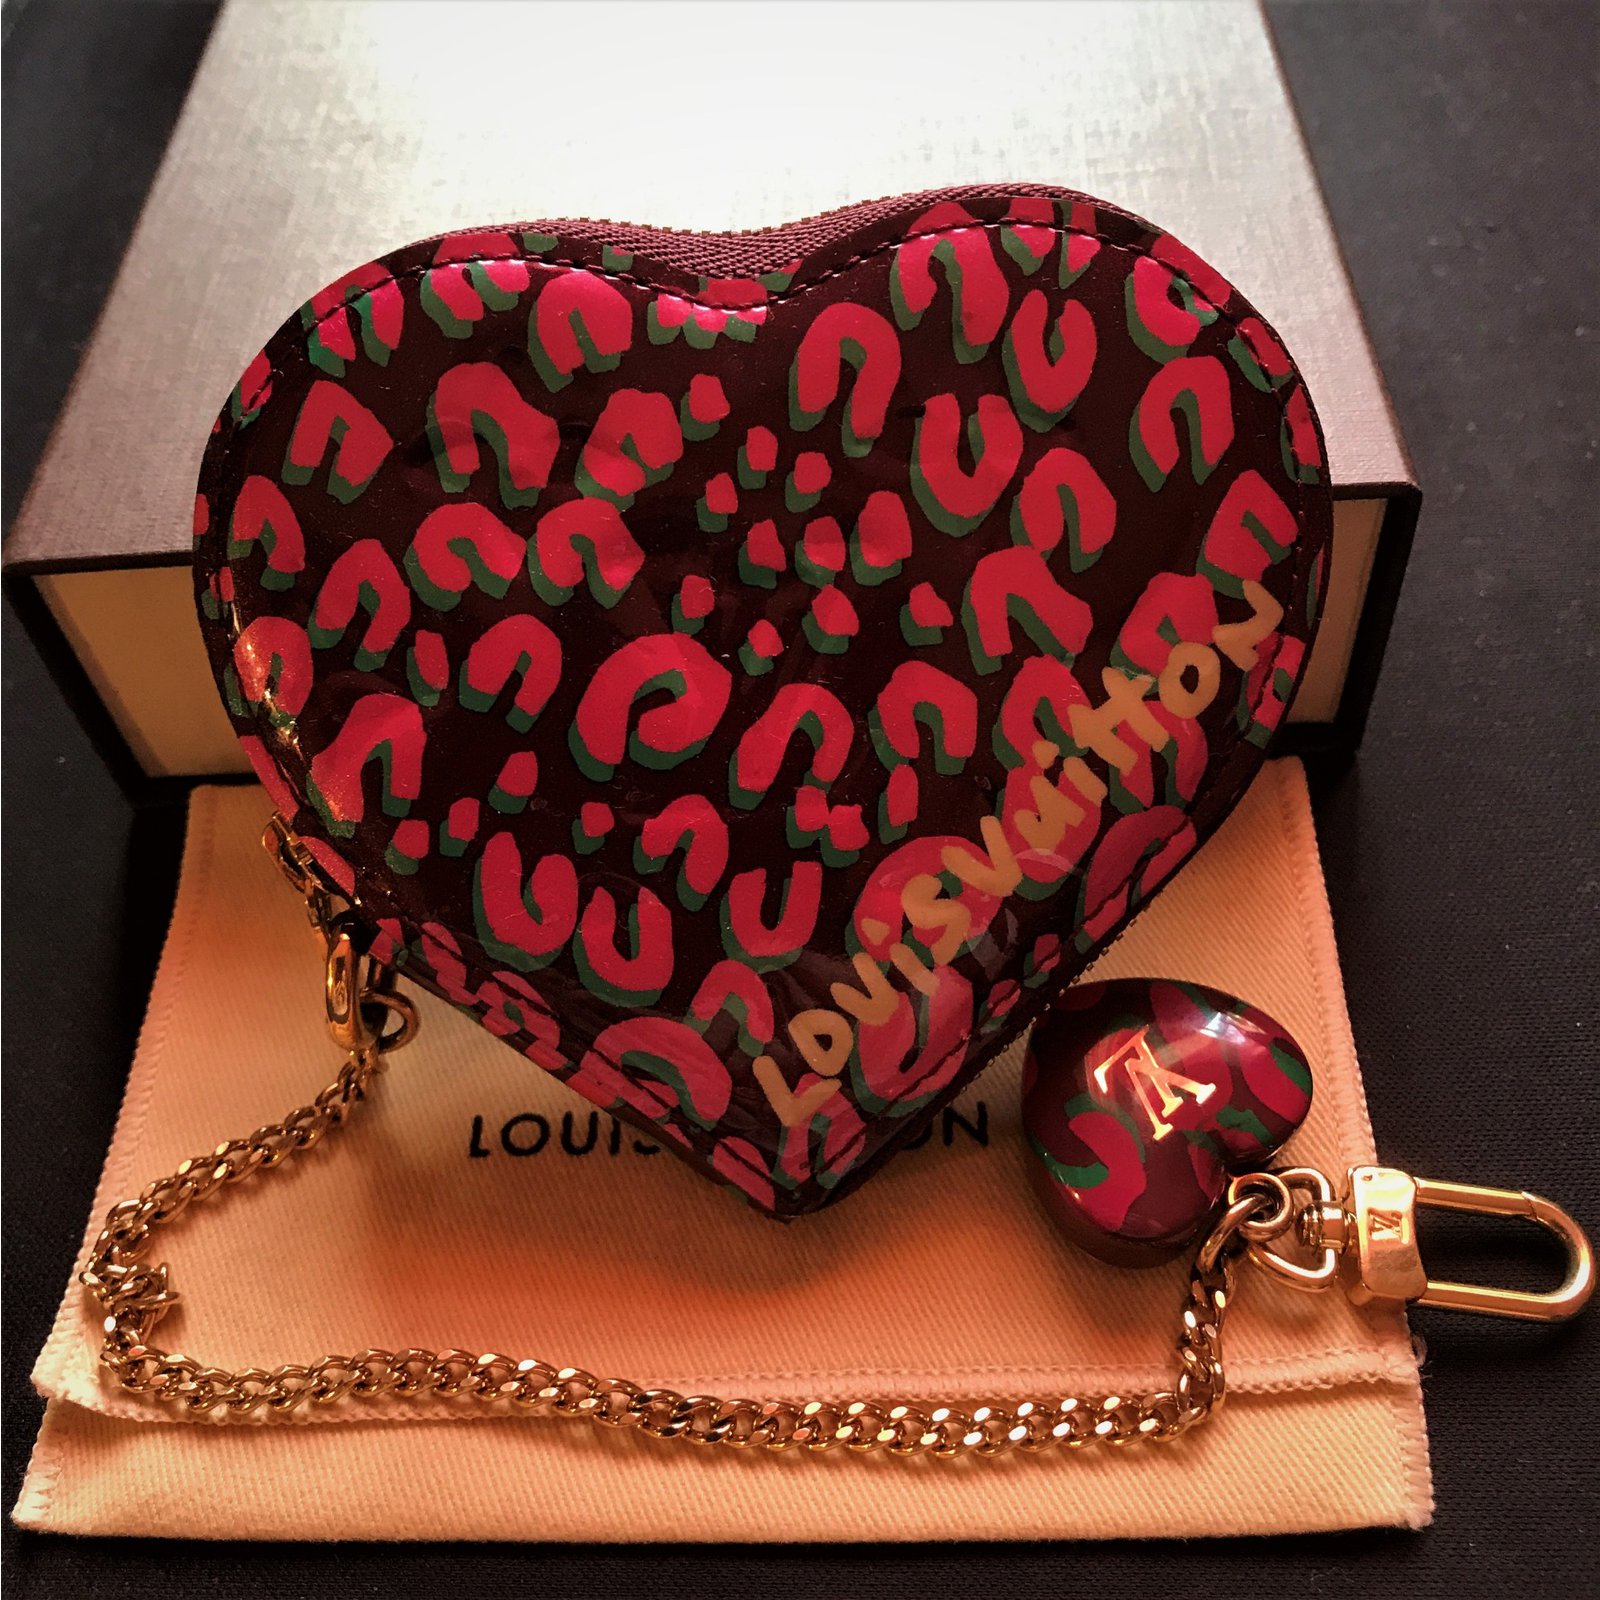 Louis Vuitton coin purse Leopard print Patent leather ref.79479